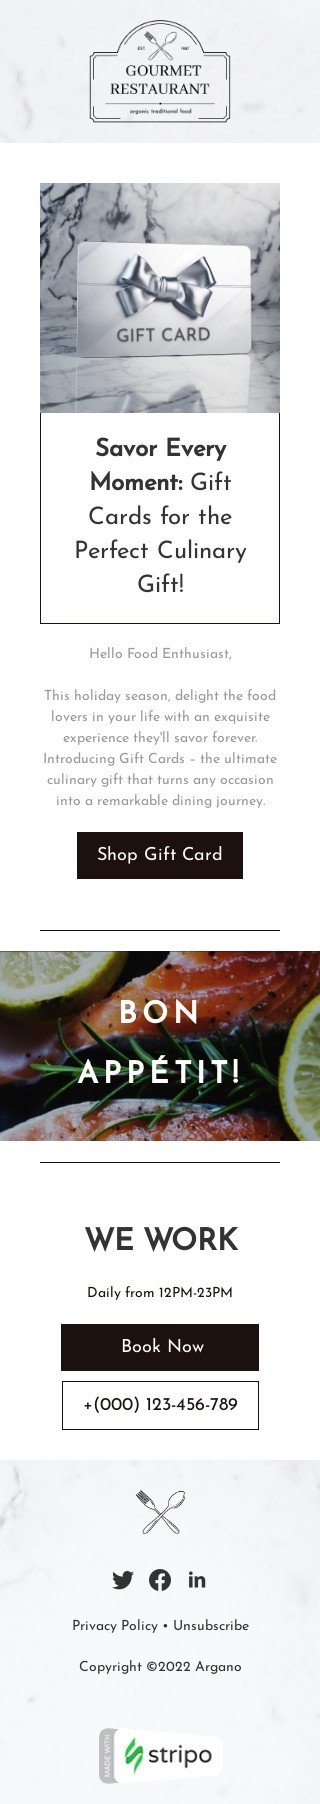 Plantilla de correo electrónico «Saborea cada momento» de tarjeta de regalo para la industria de restaurantes Vista de móvil